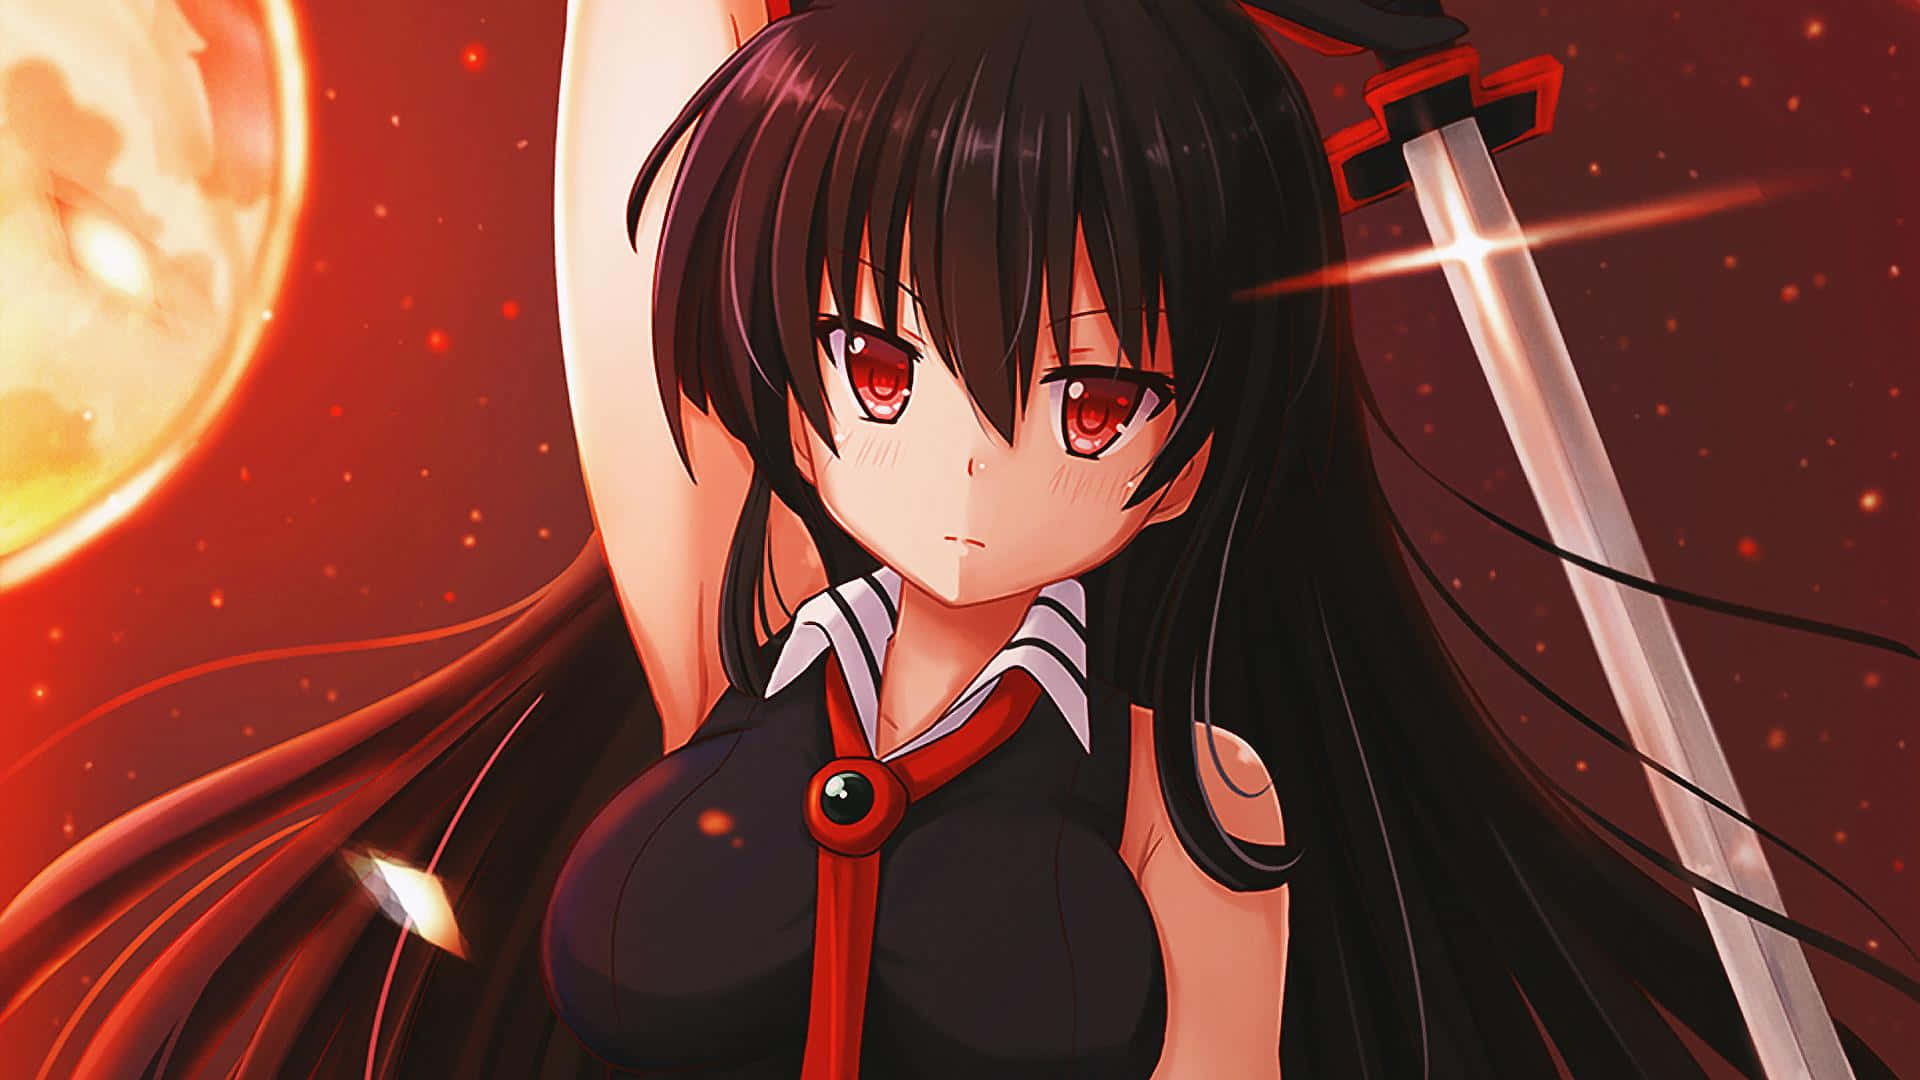 300 Anime Akame ga Kill HD Wallpapers and Backgrounds